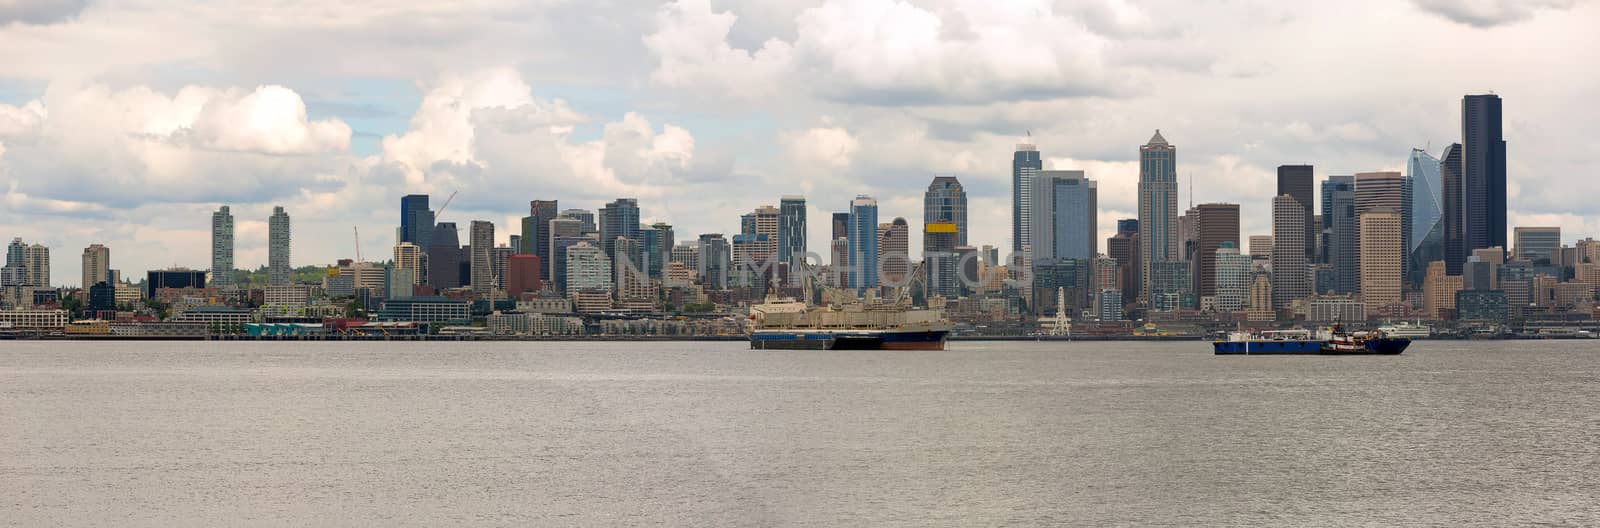 Seattle City Skyline along Elliott Bay by Davidgn